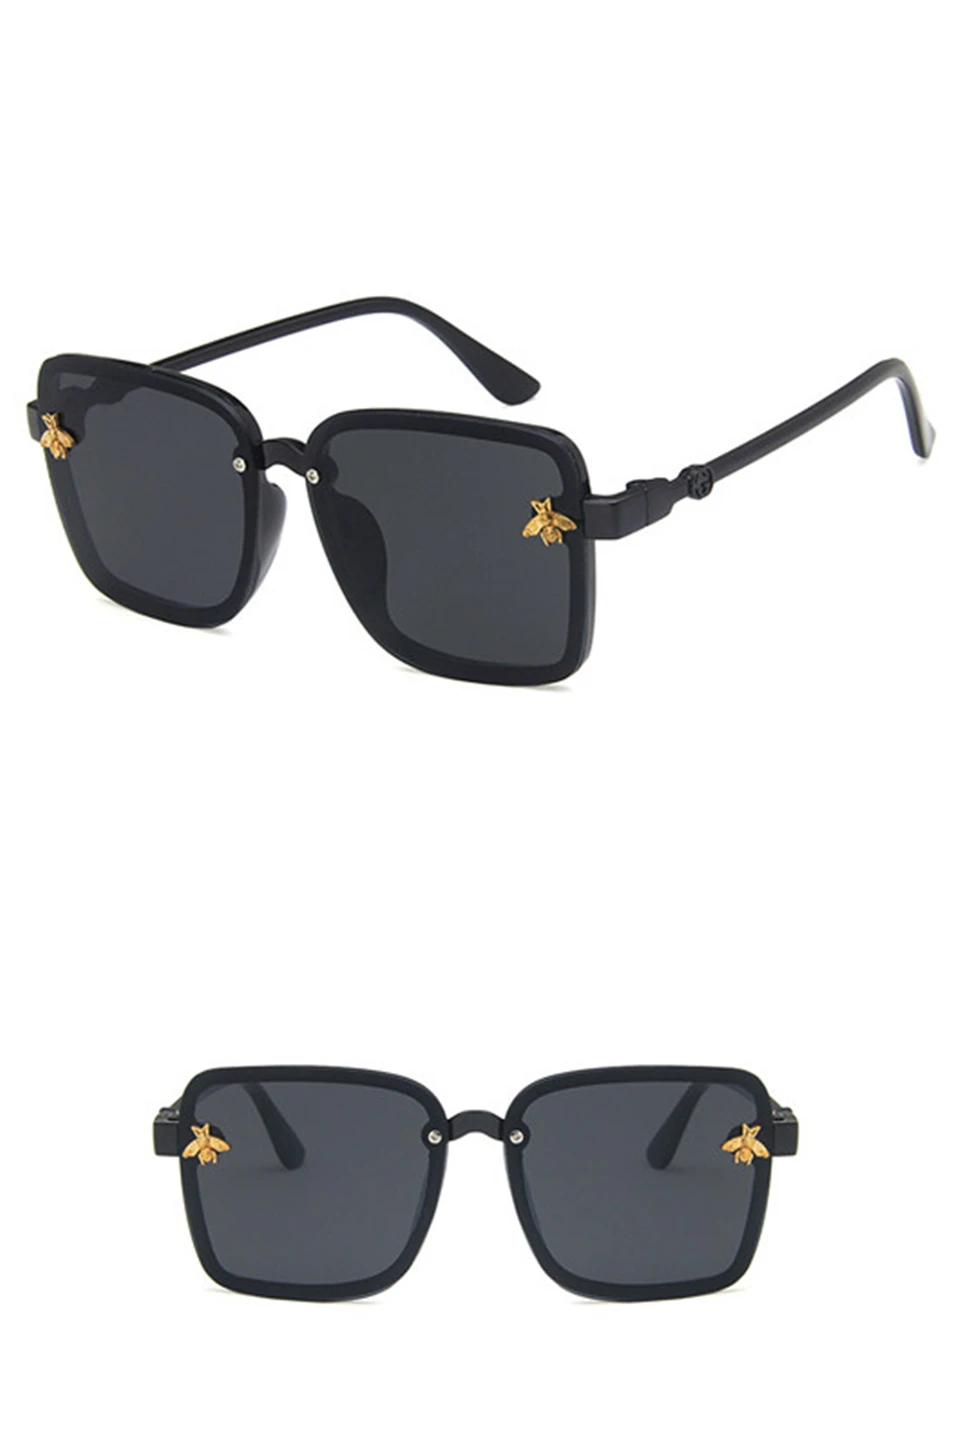 2019 негабаритных квадратных очки детские солнцезащитные очки знаменитостей для мальчиков девочек суперзвезды Роскошные брендовые